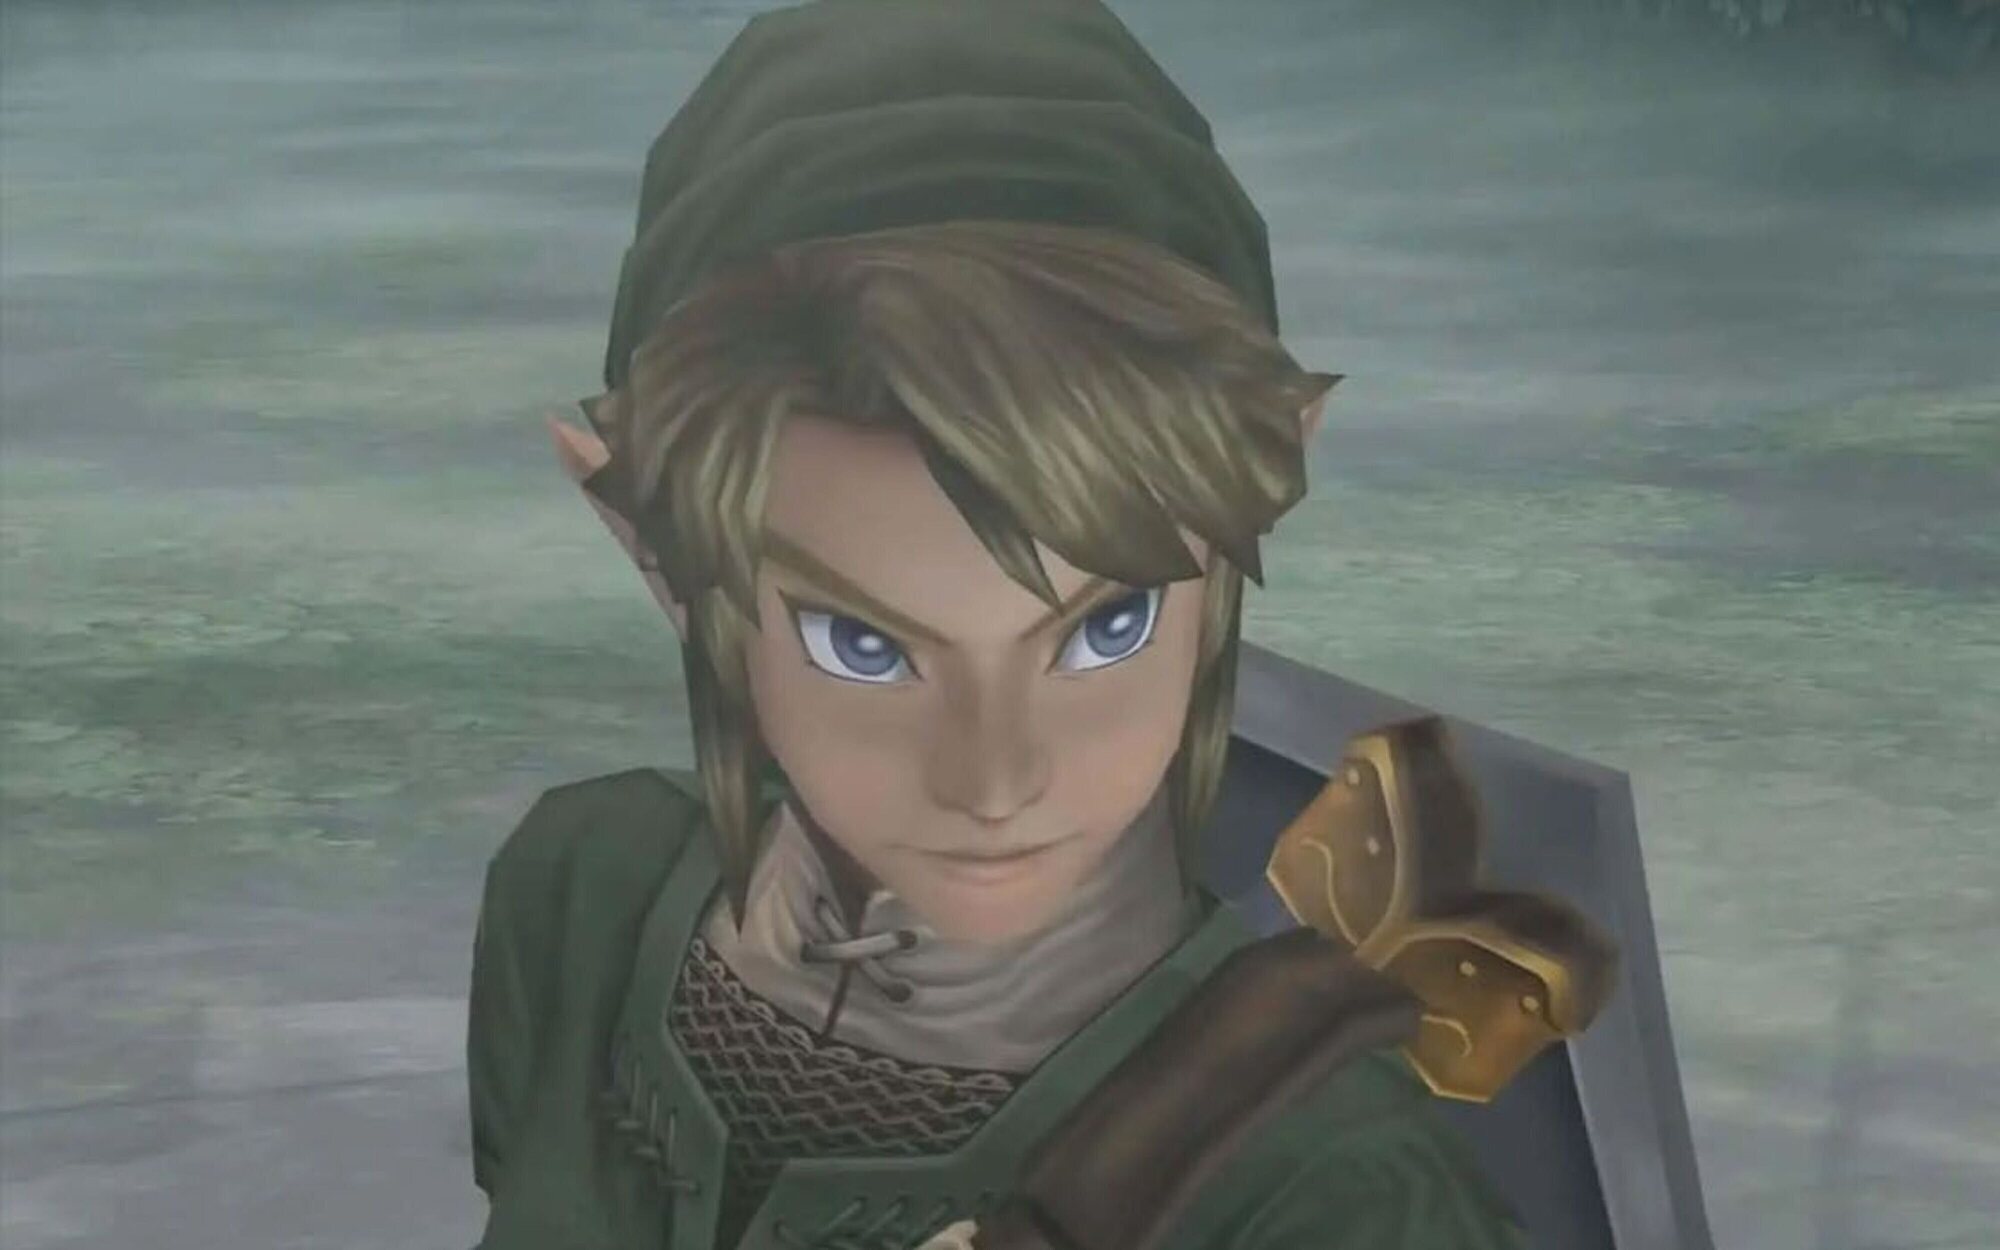 Habrá un Nintendo Direct de 'The Legend of Zelda' para septiembre, según un importante insider